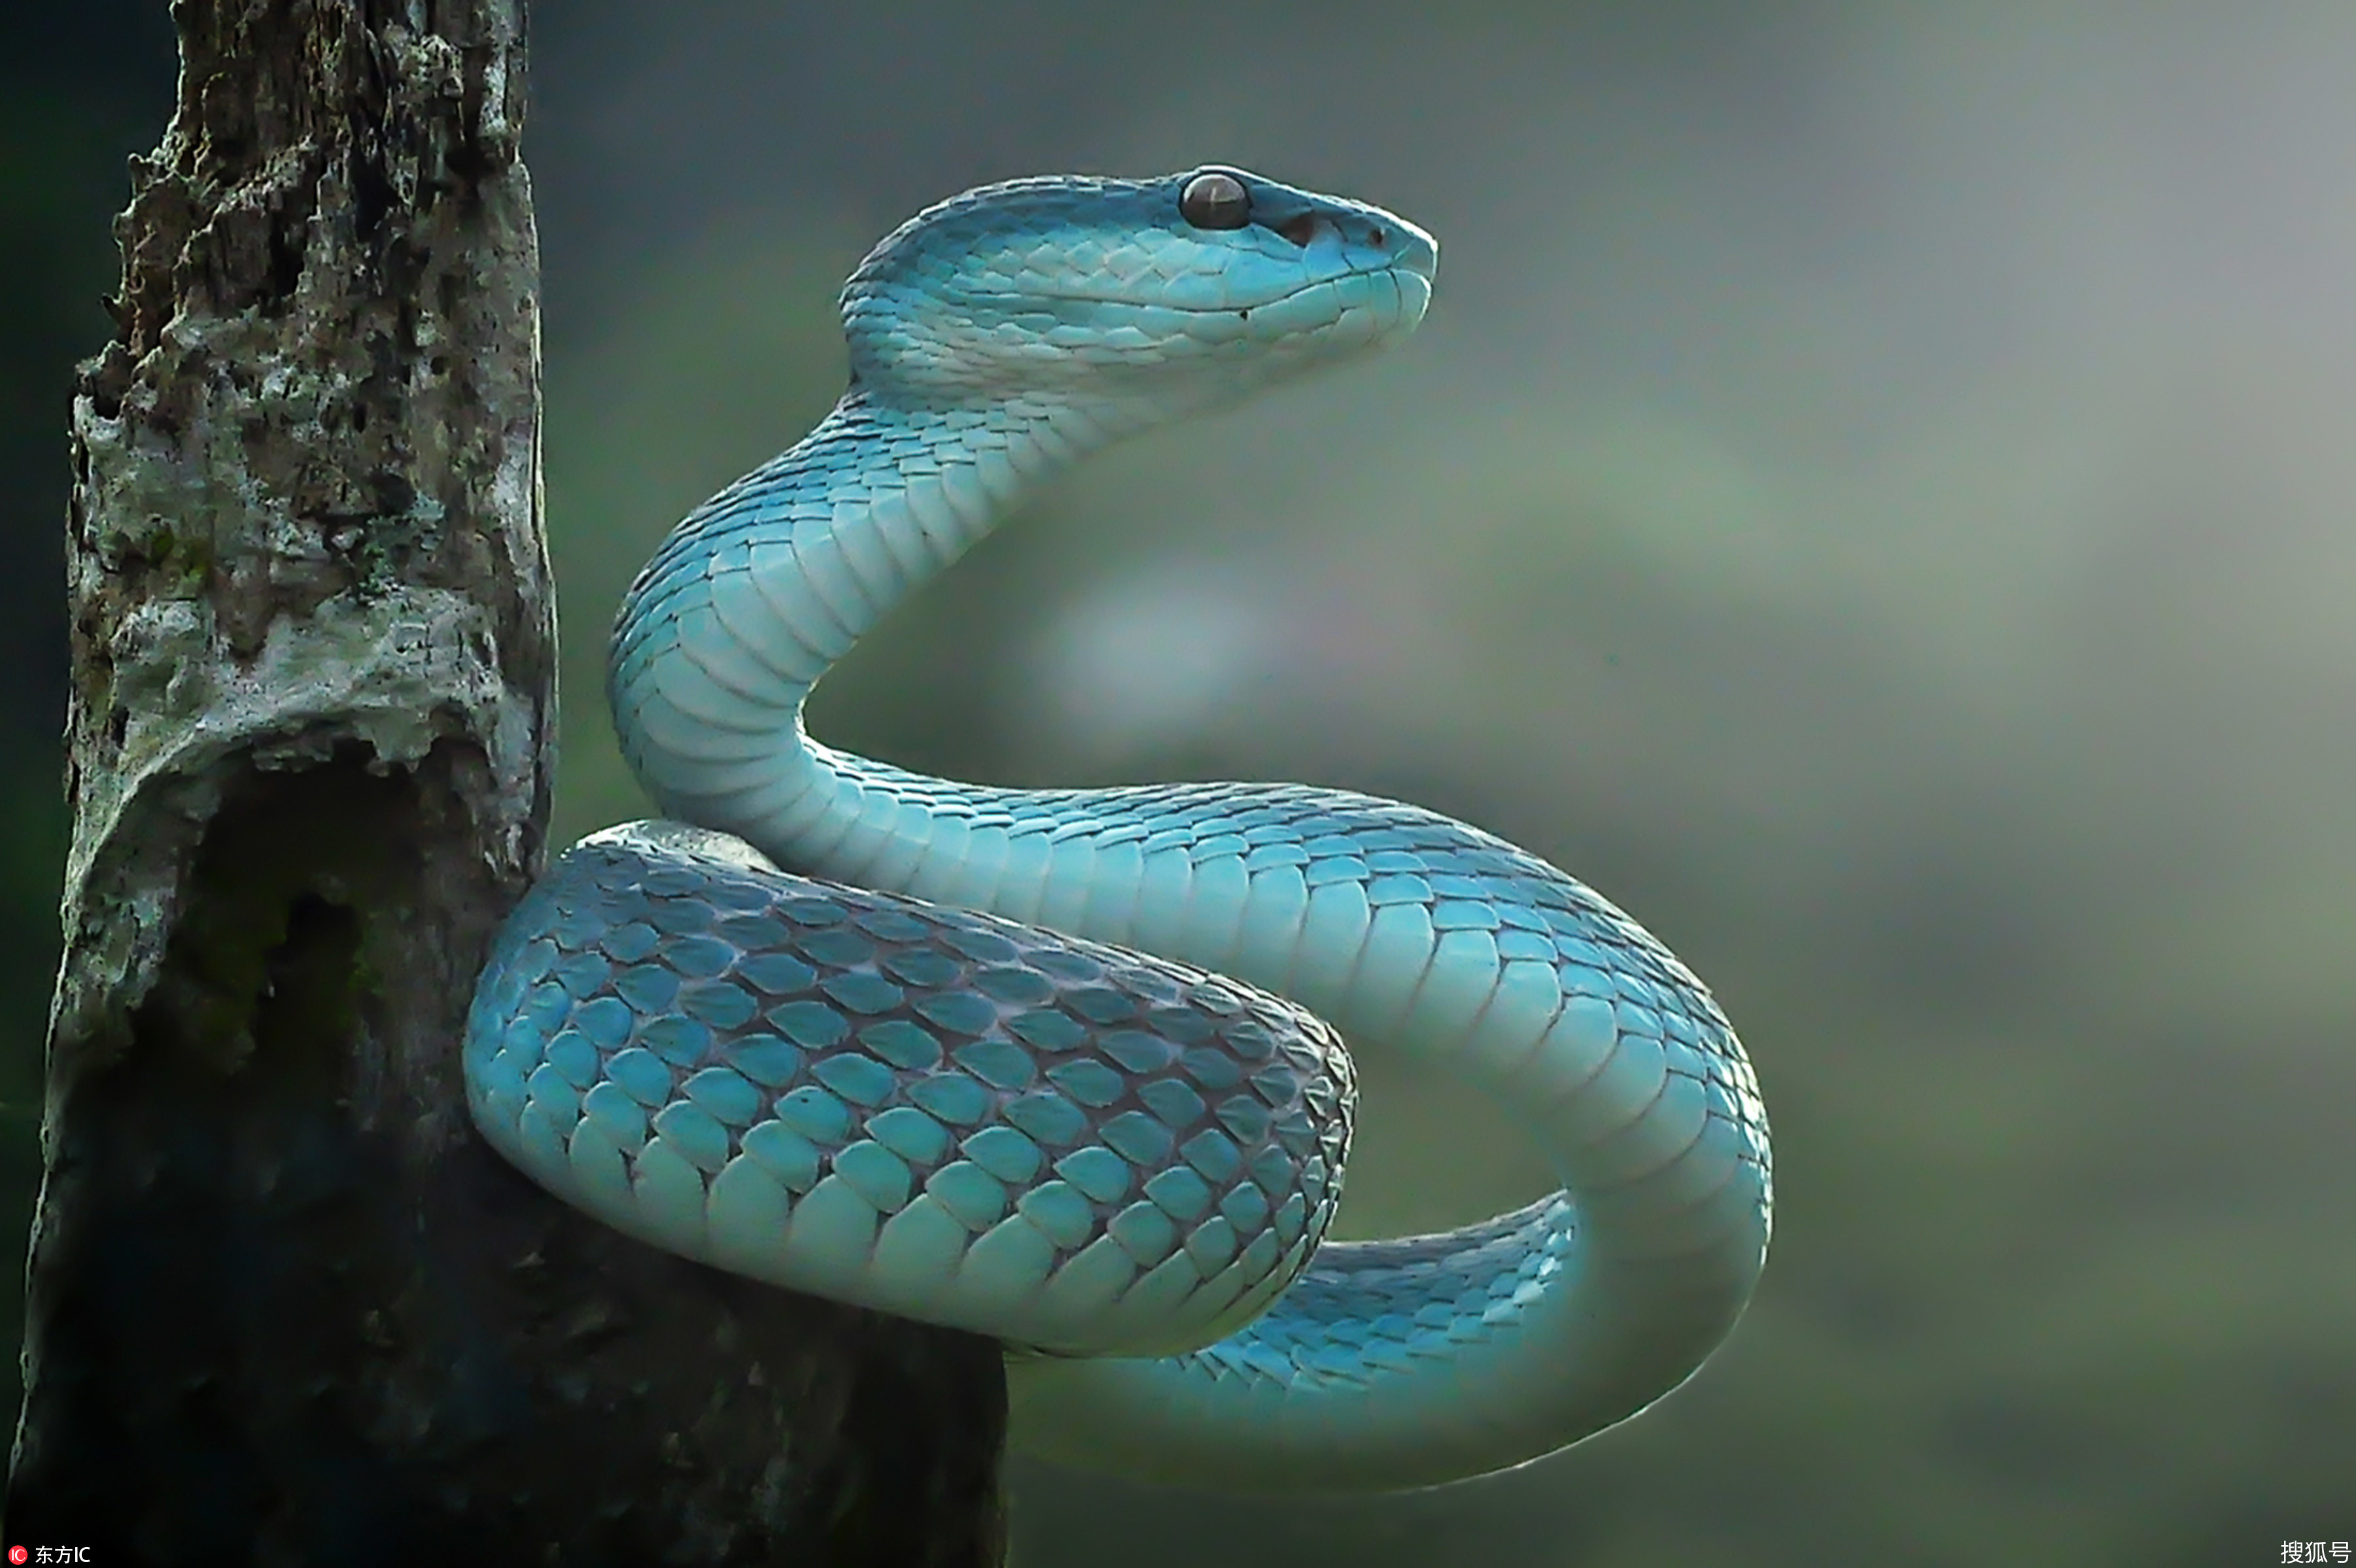 蓝蛇也叫蓝血蛇,是绿树蟒蓝色变异的一种,属于绿树蟒的变异,无毒.